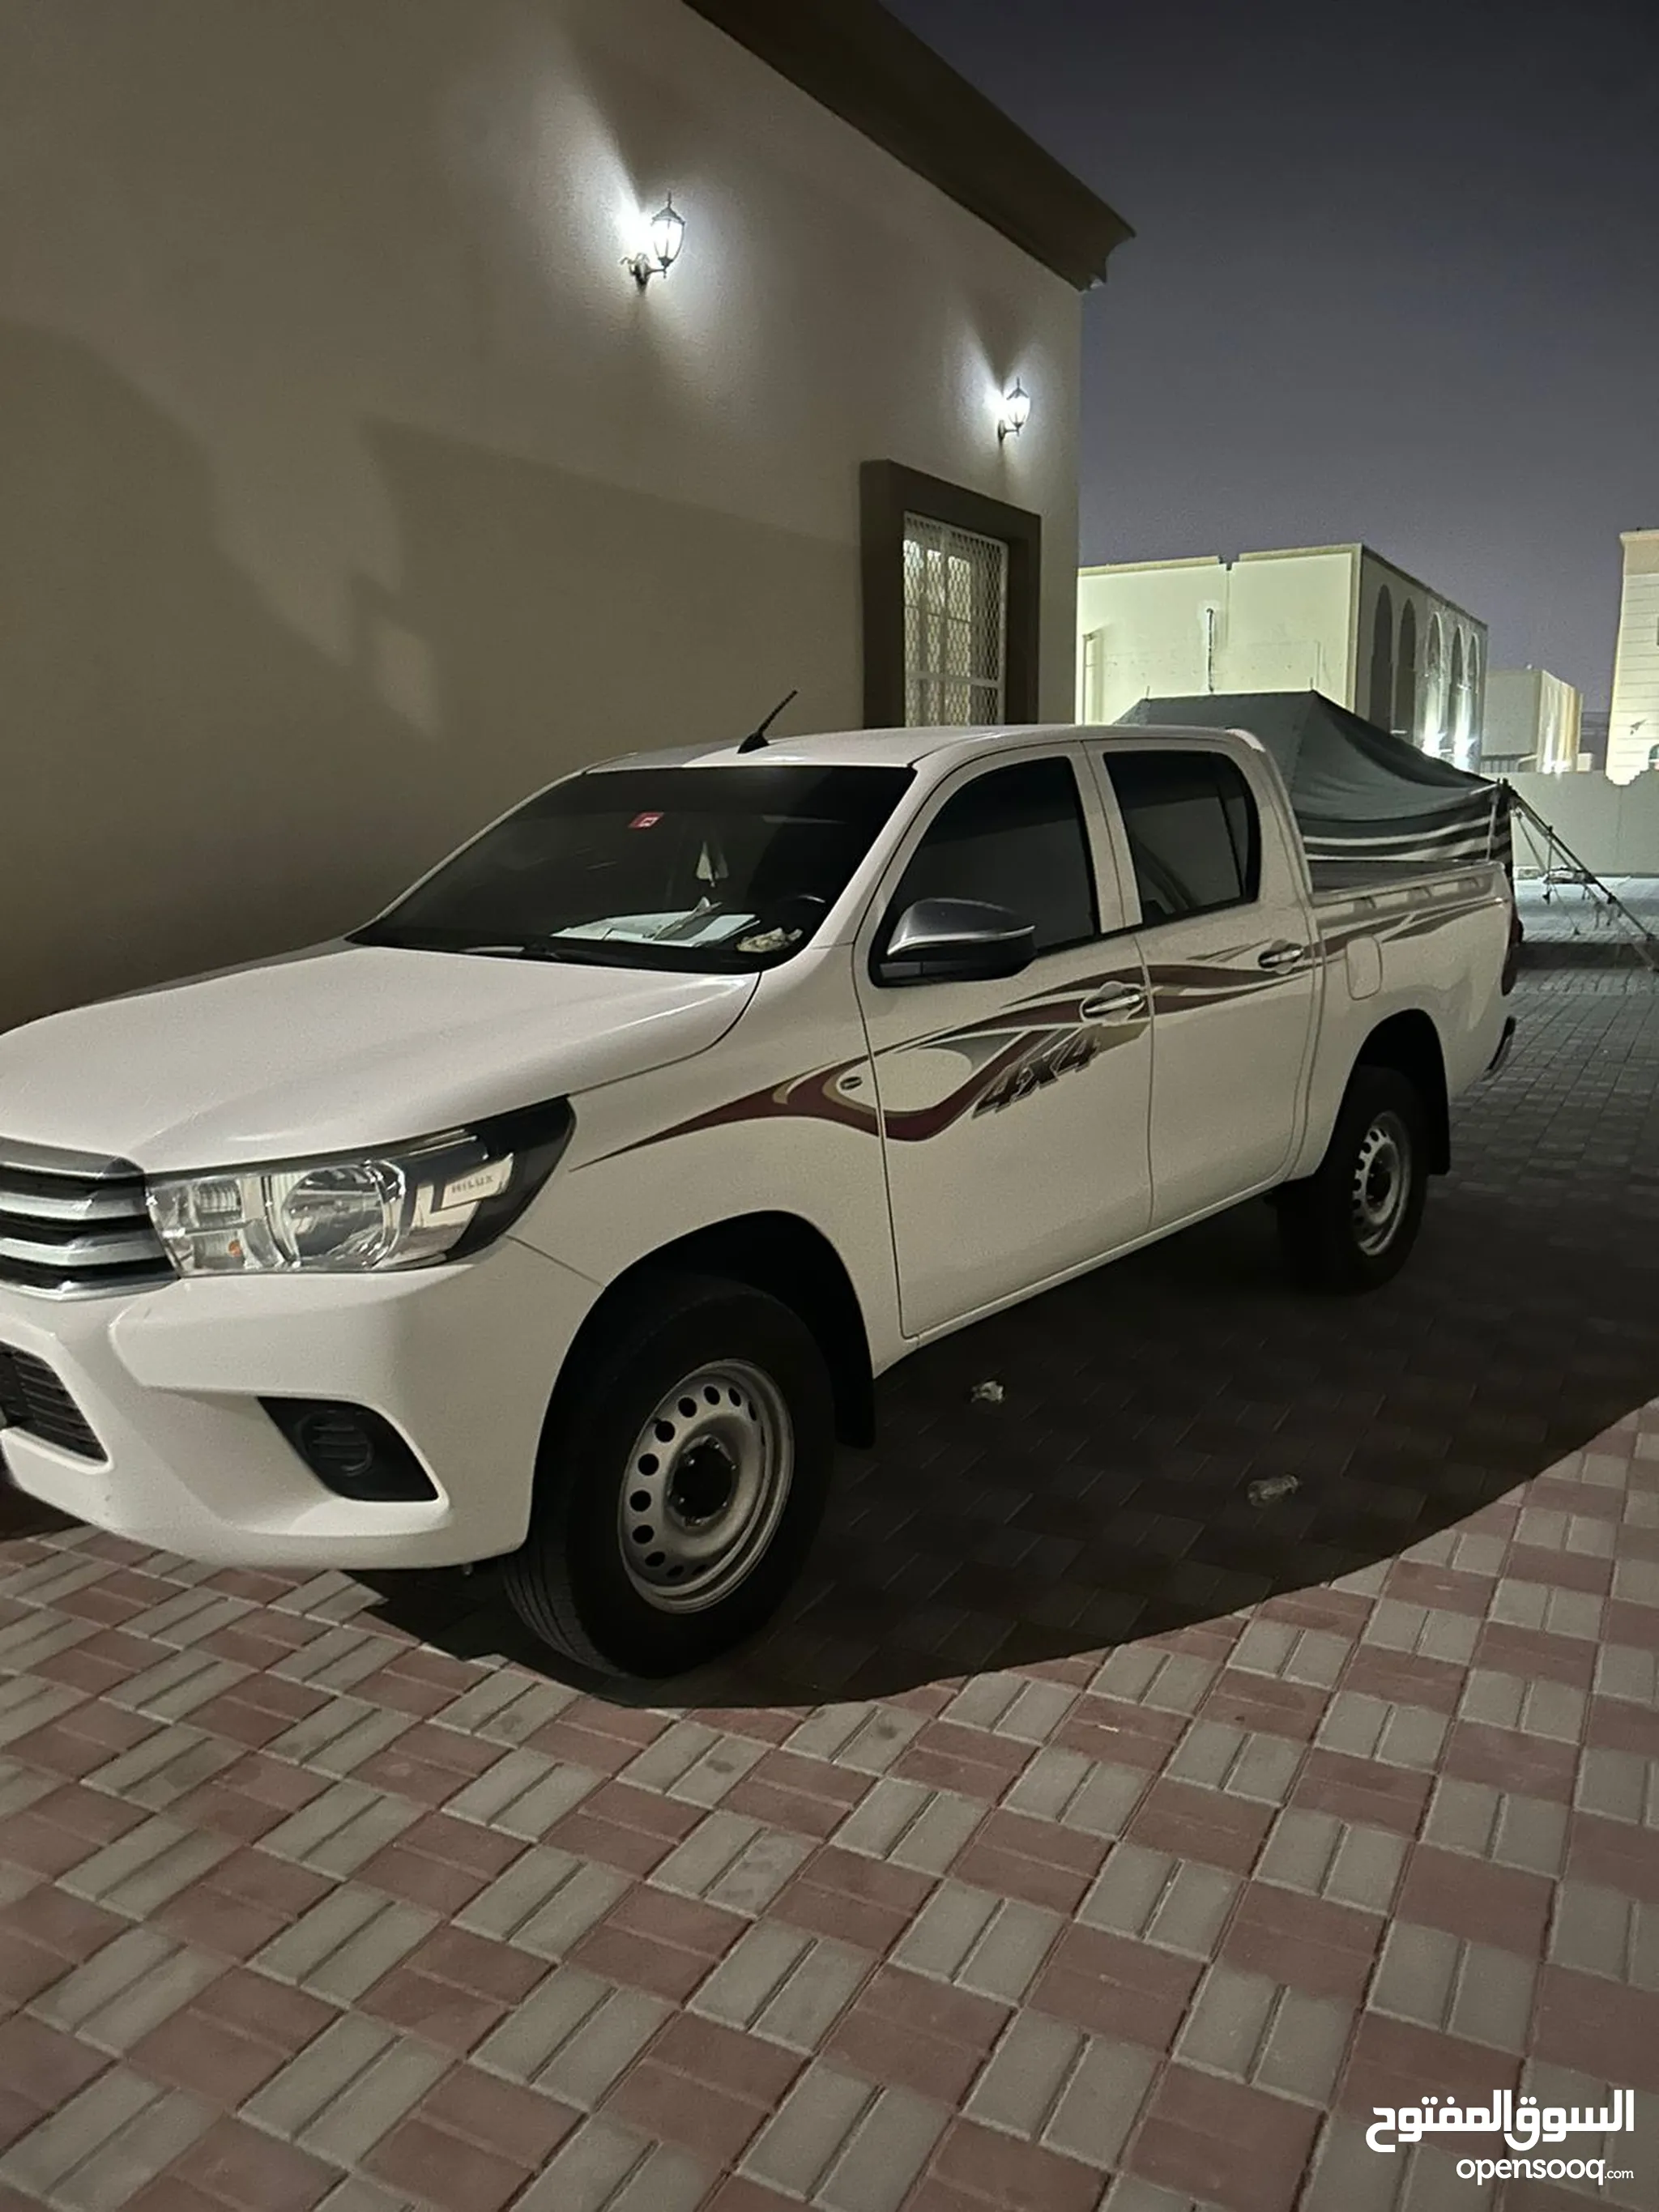 تويوتا هيلوكس للبيع في أبو ظبي : مستعملة وجديدة : تويوتا هيلوكس بارخص سعر |  السوق المفتوح